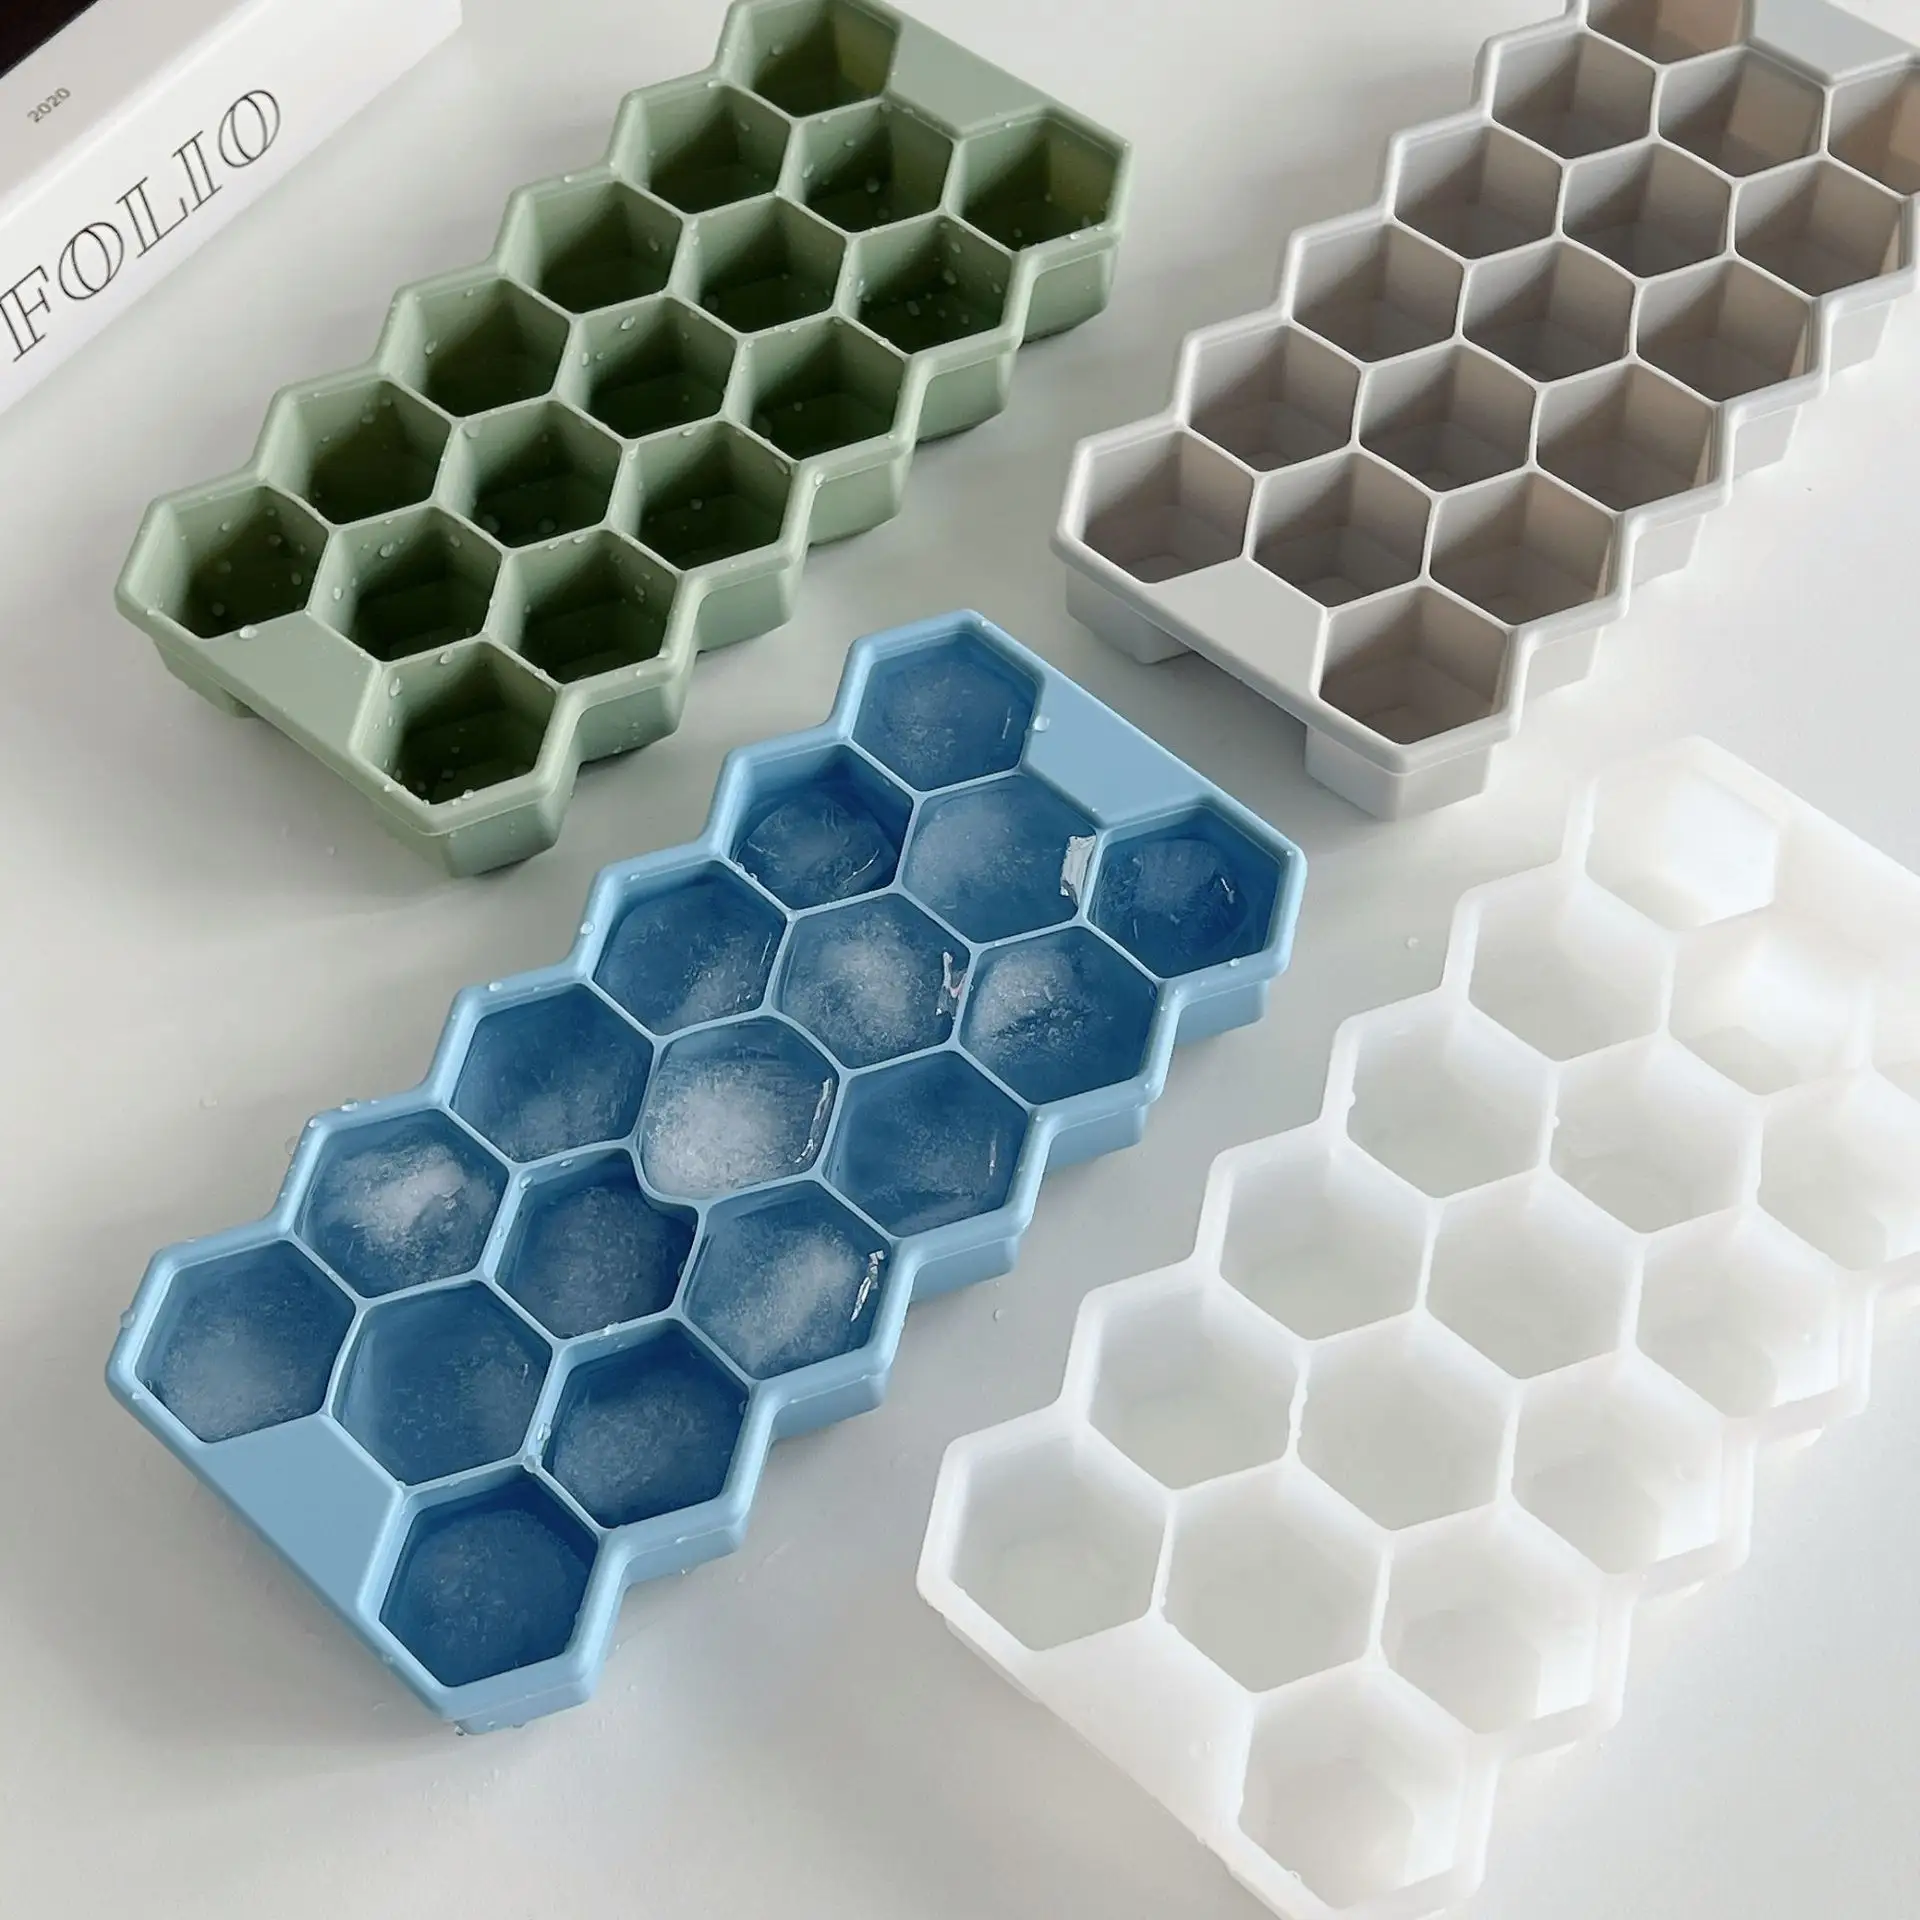 Molde de cubos de gelo de silicone personalizado sem BPA bandeja de cubos de gelo de silicone de fácil liberação com tampa para fazer blocos de gelo